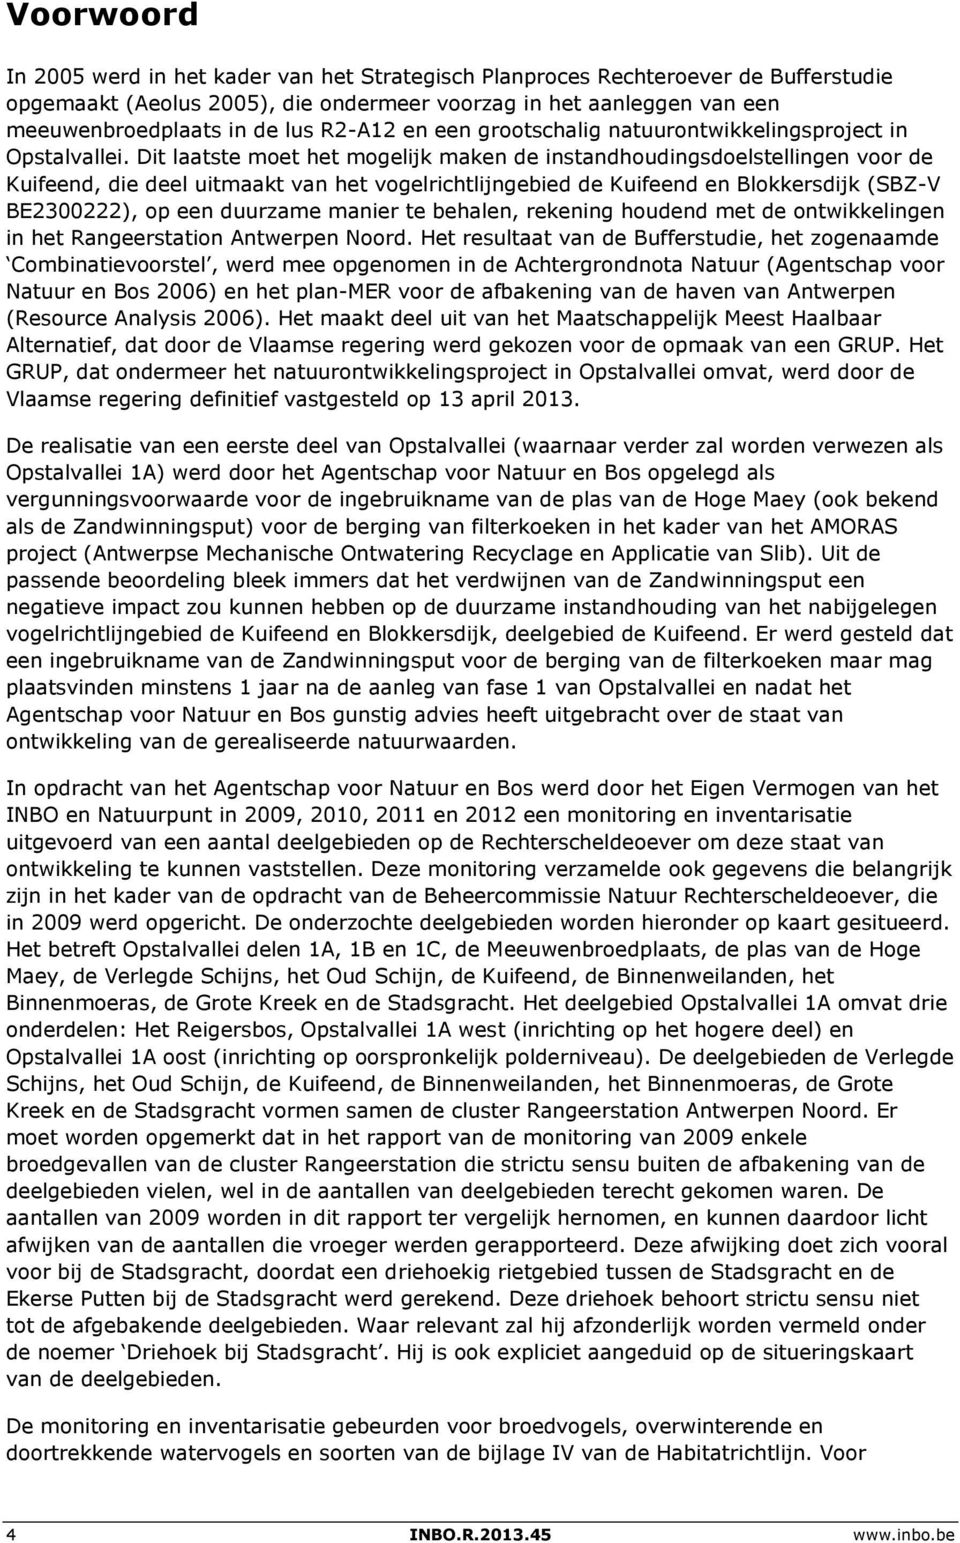 Dit laatste moet het mogelijk maken de instandhoudingsdoelstellingen voor de Kuifeend, die deel uitmaakt van het vogelrichtlijngebied de Kuifeend en Blokkersdijk (SBZ-V BE23222), op een duurzame